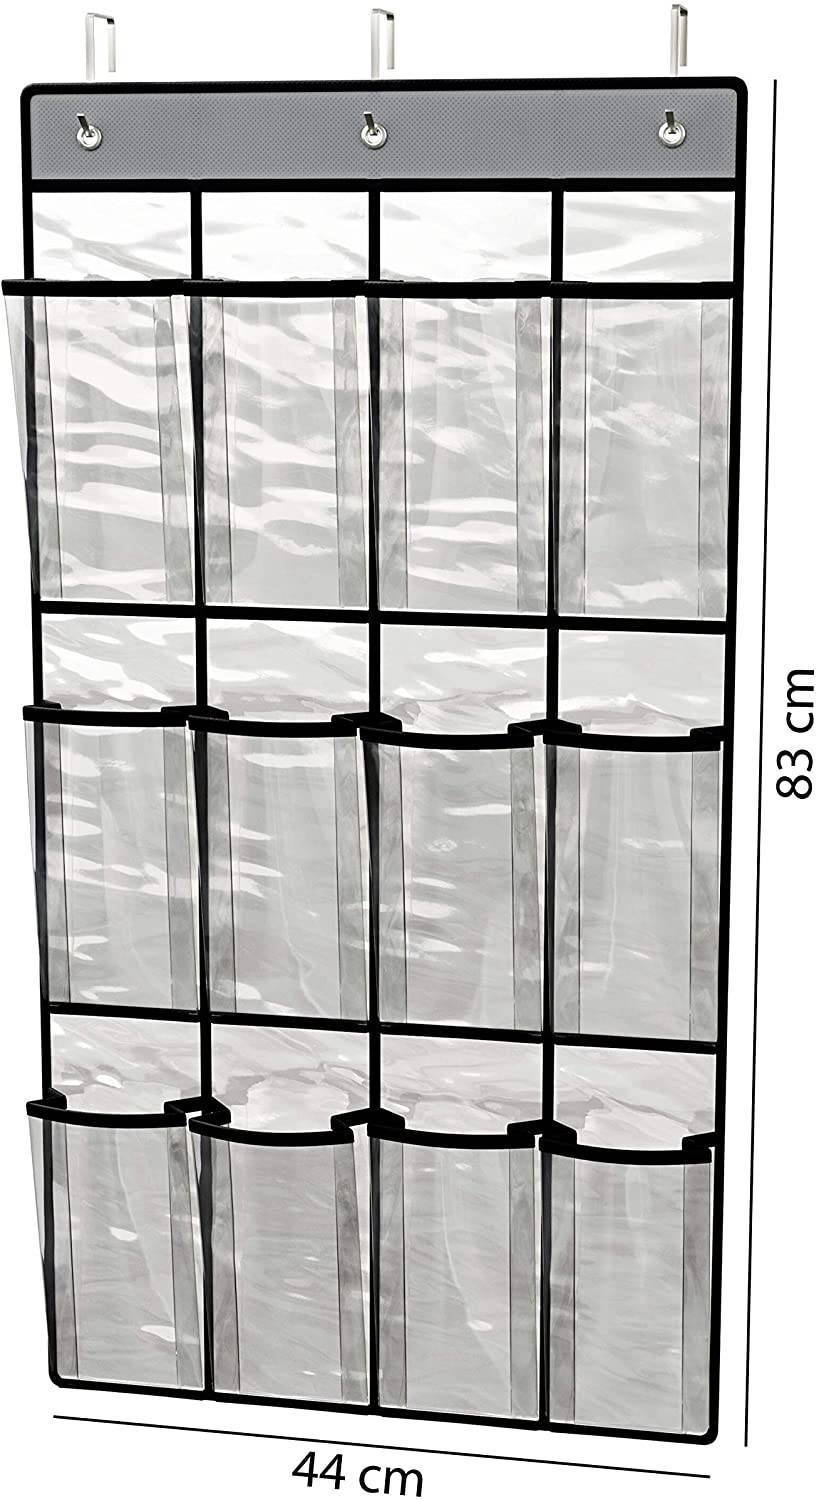 Sapateira transparente pendurável 12 pares - LCGELETRO